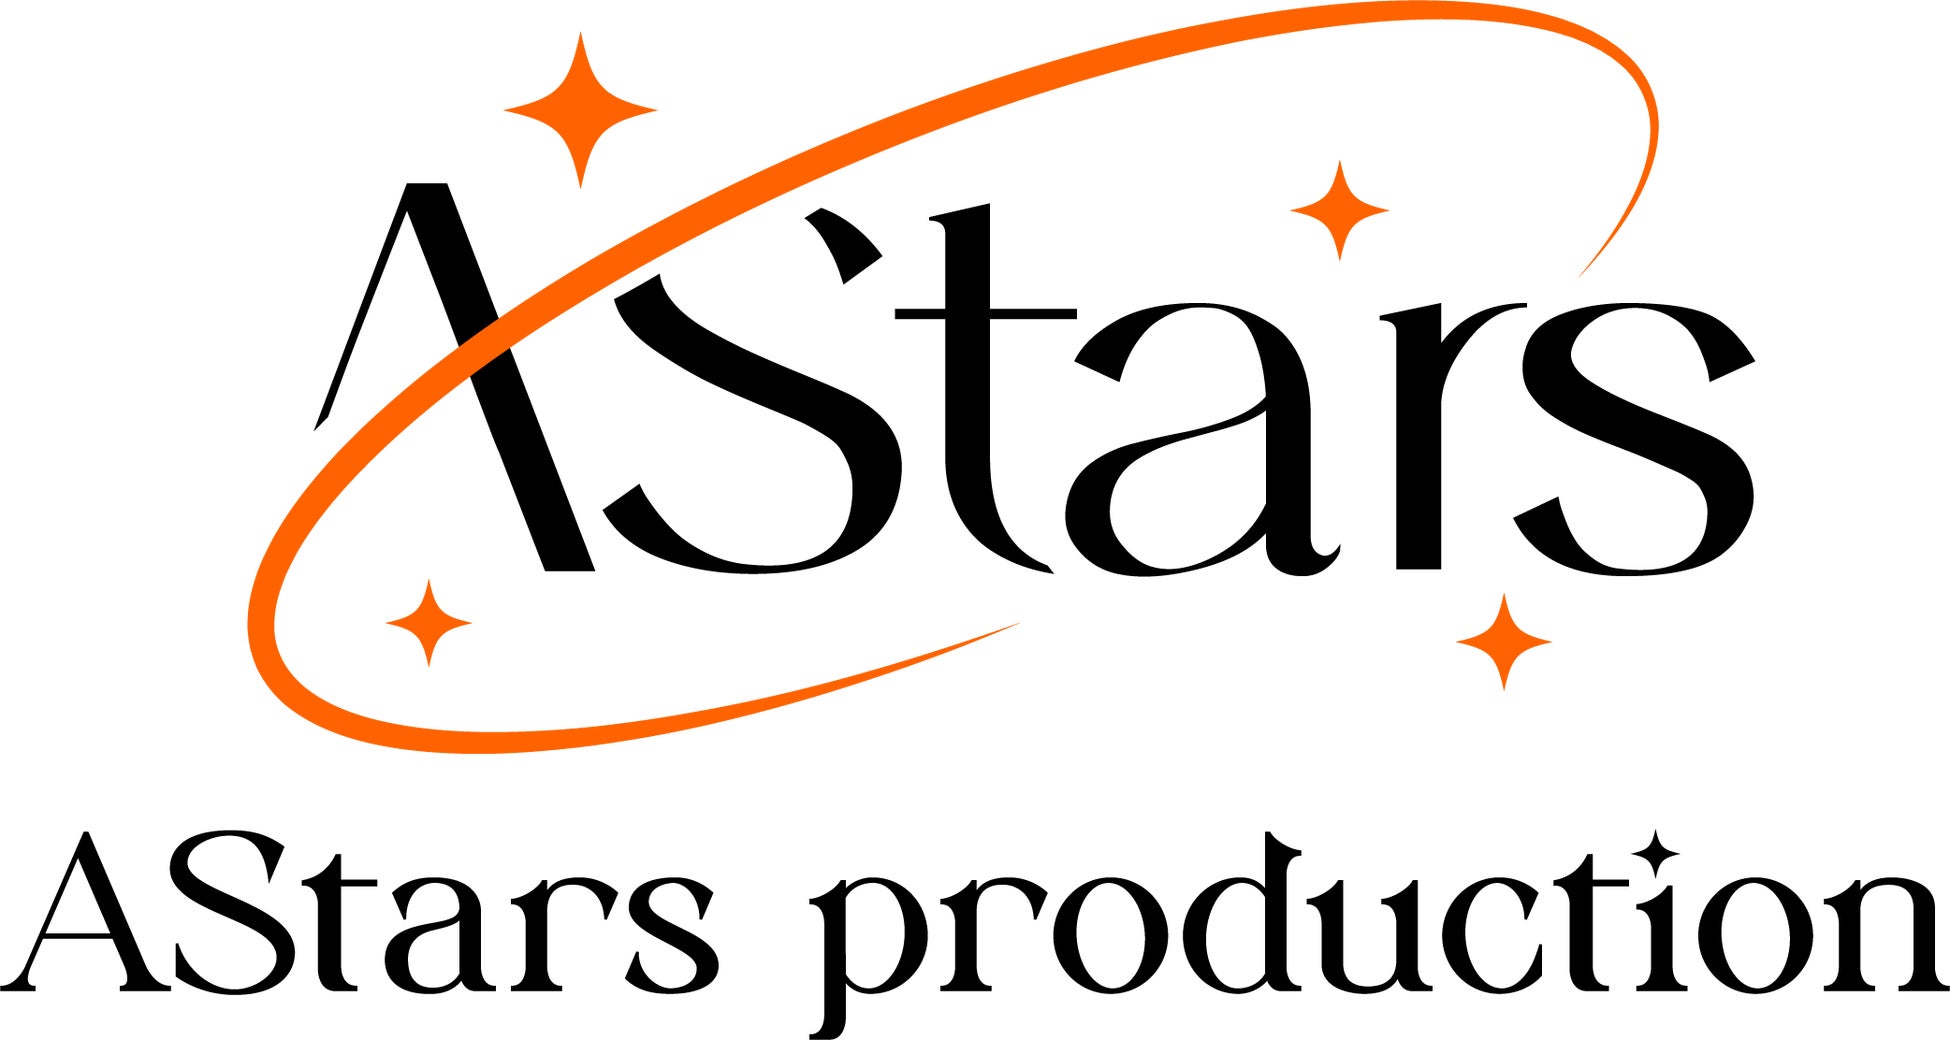 Brave group APAC、東南アジア・タイ語圏向けVTuberプロダクション「AStars production」設立。7月27日に男性ユニットデビュー！